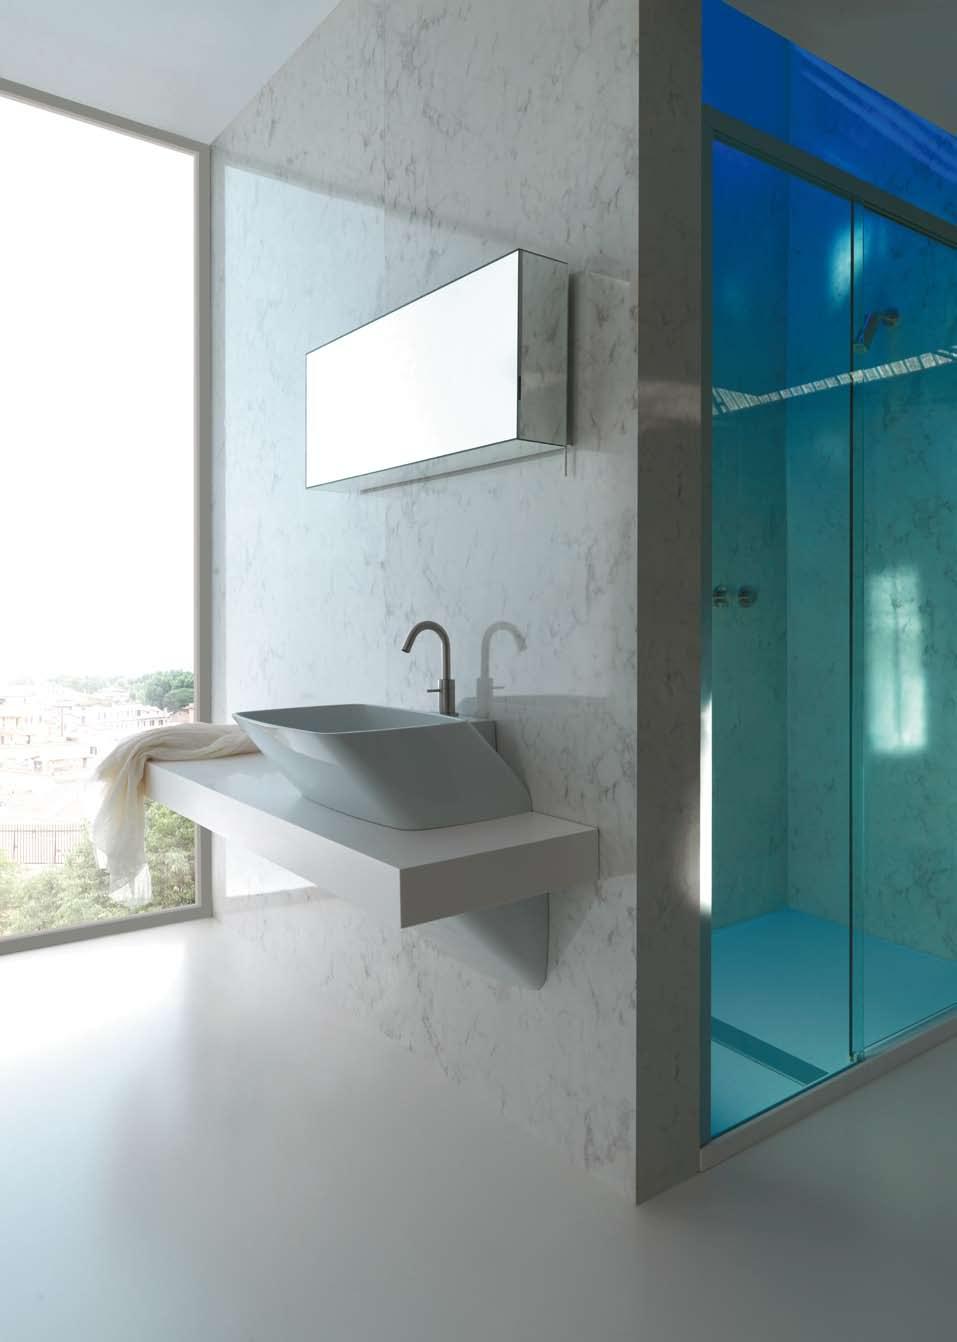 26_27 lavabo appoggio con piano rubinetteria e carter copri sifone overtop basin with tap hole and syphon cover case SPECCHI specchio